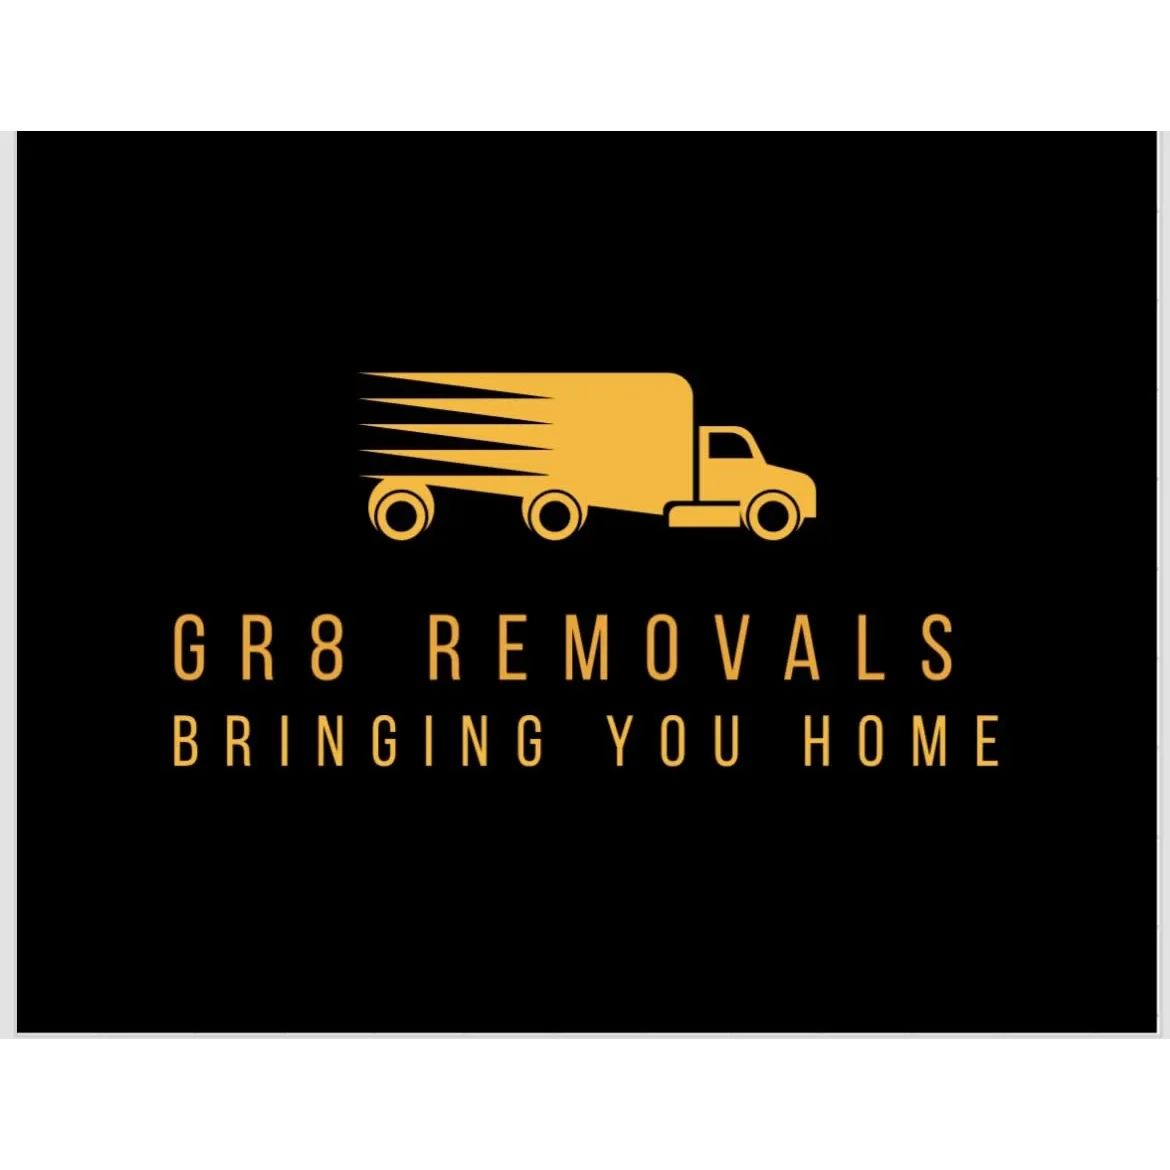 GR8 Removals - Glasgow, Lanarkshire - 07359 138945 | ShowMeLocal.com